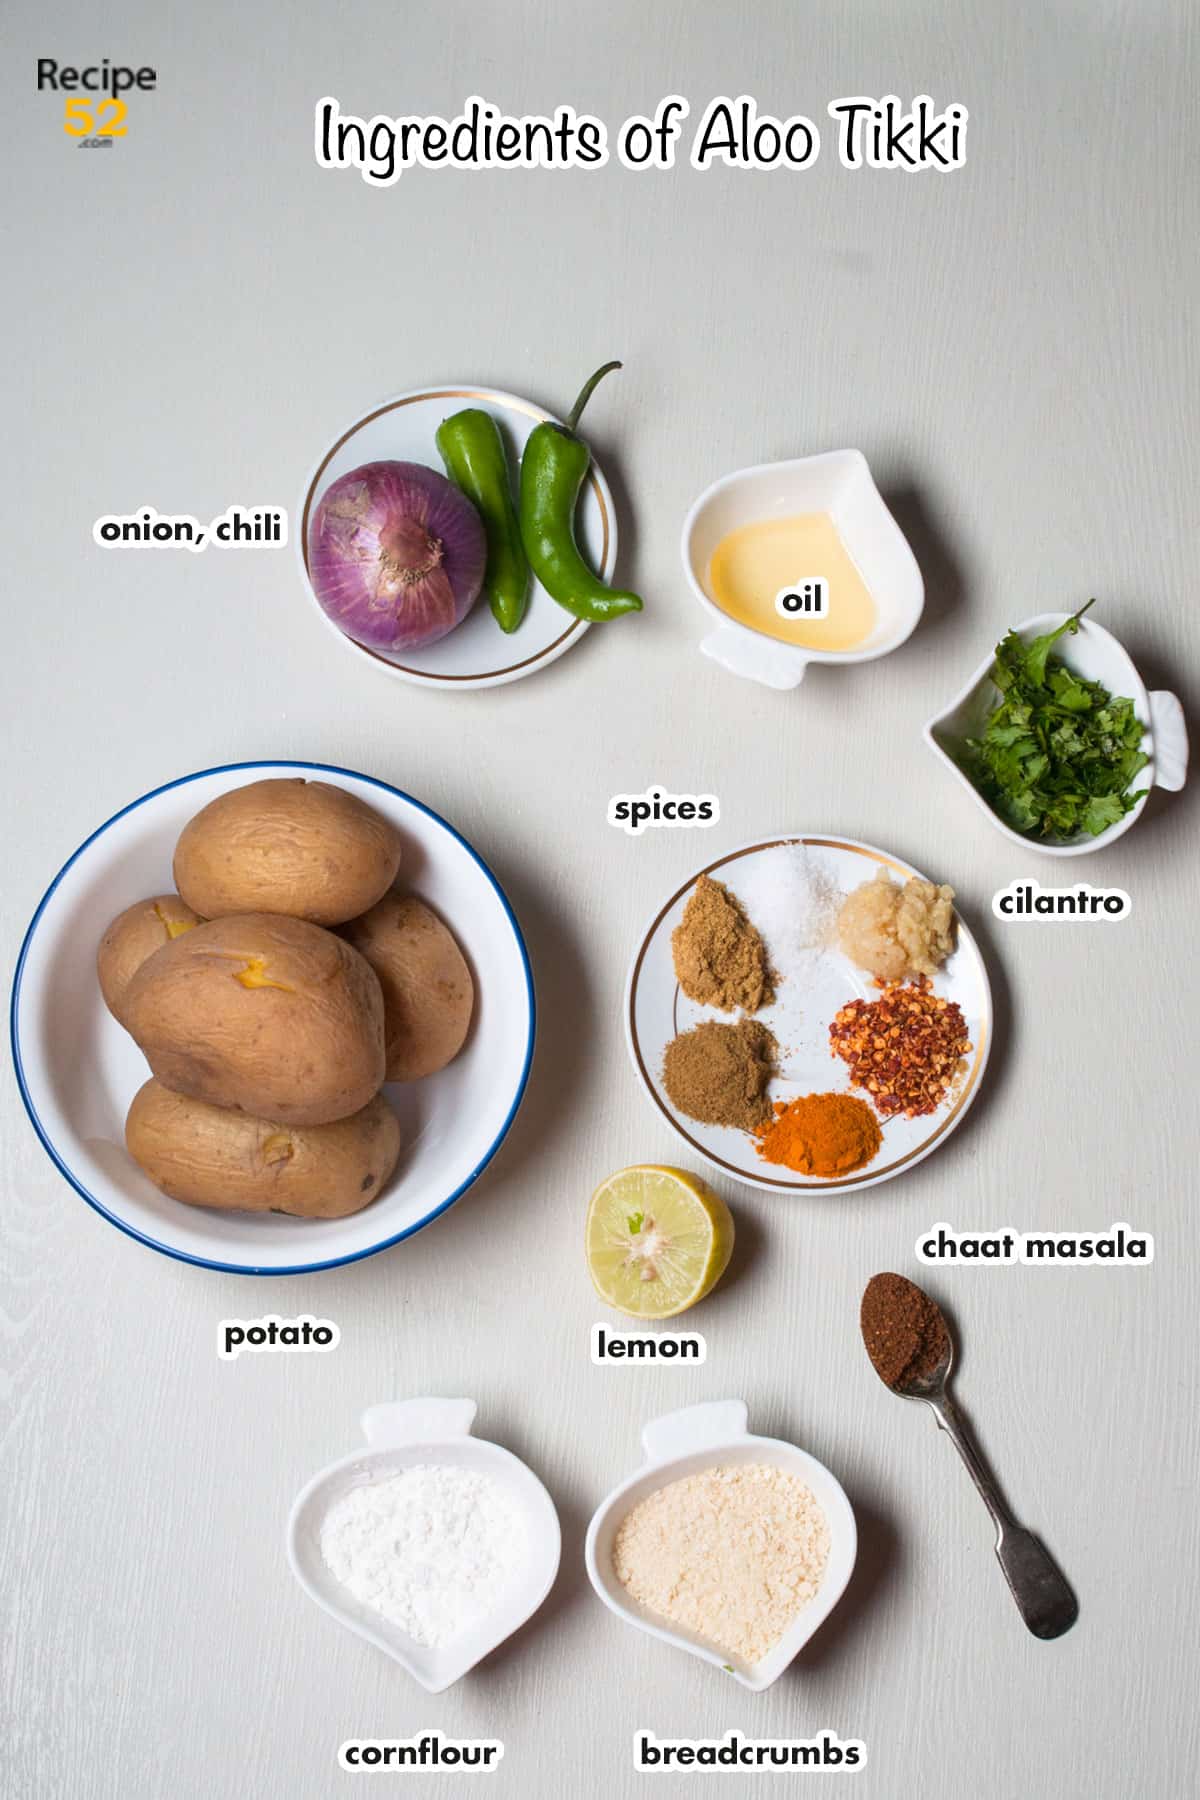 Ingredients of aloo tikki on the white background.